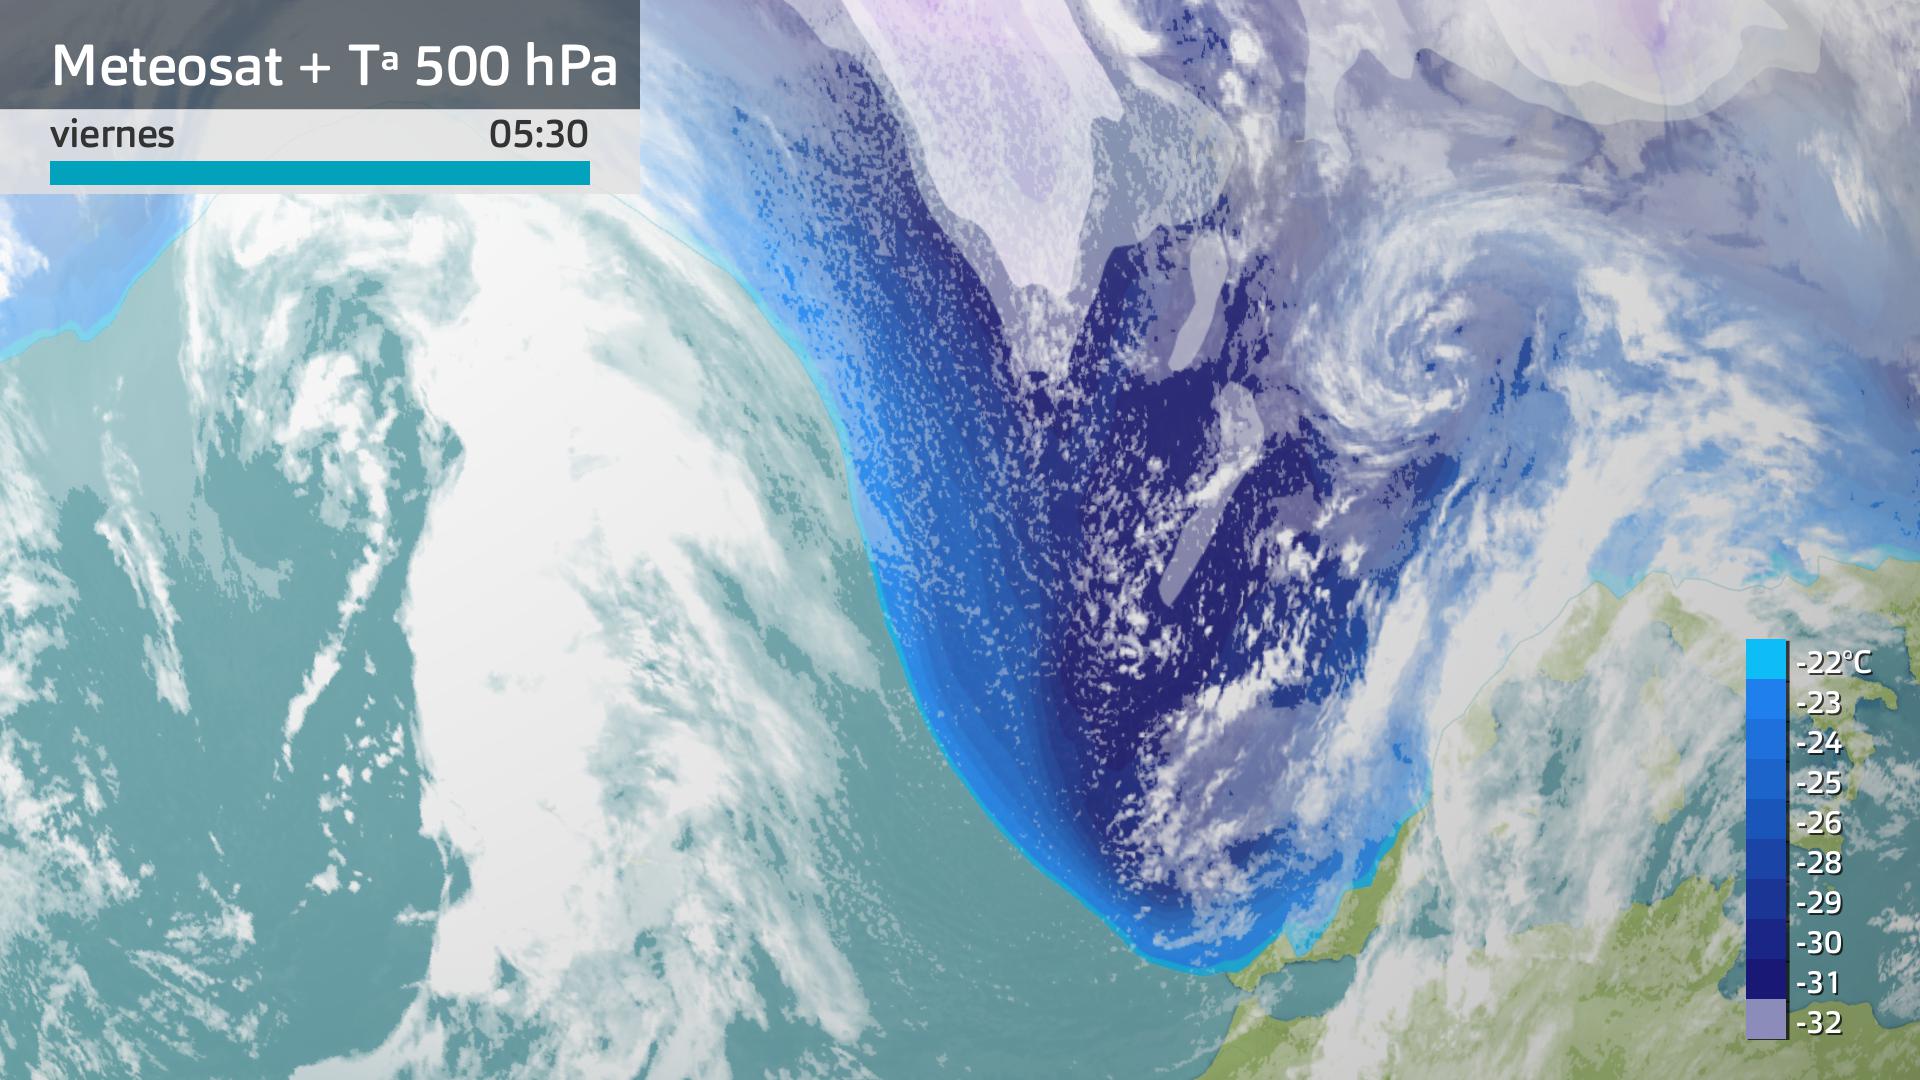 Imagen del Meteosat + temperatura a 500 hPa (5500 m aprox) viernes 5 de enero 5:30 h.